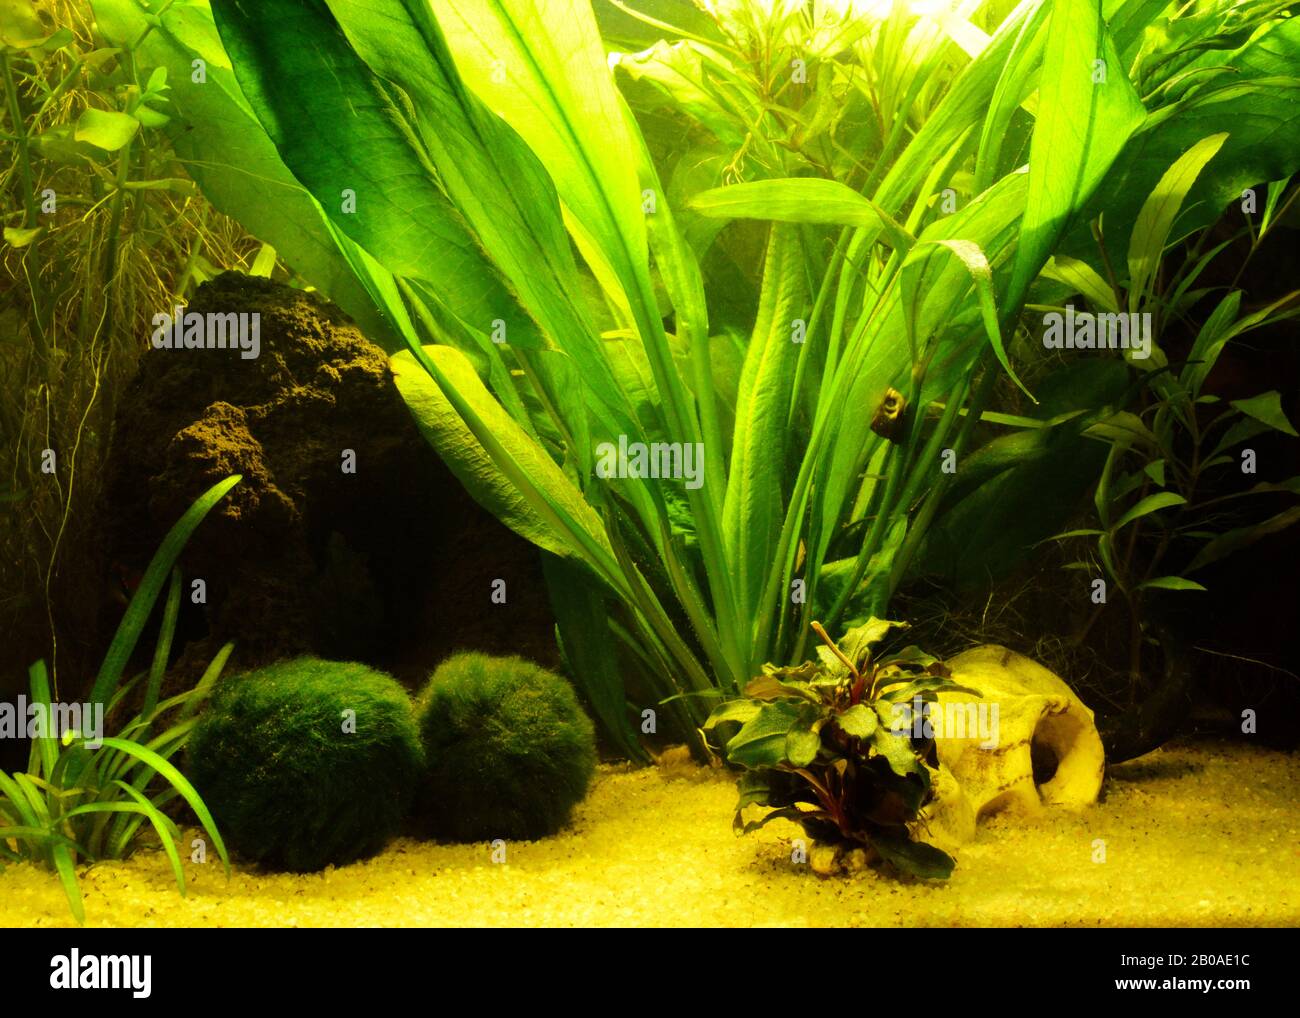 Magnifiques plantes aquatiques dans un aquarium d'eau douce Banque D'Images